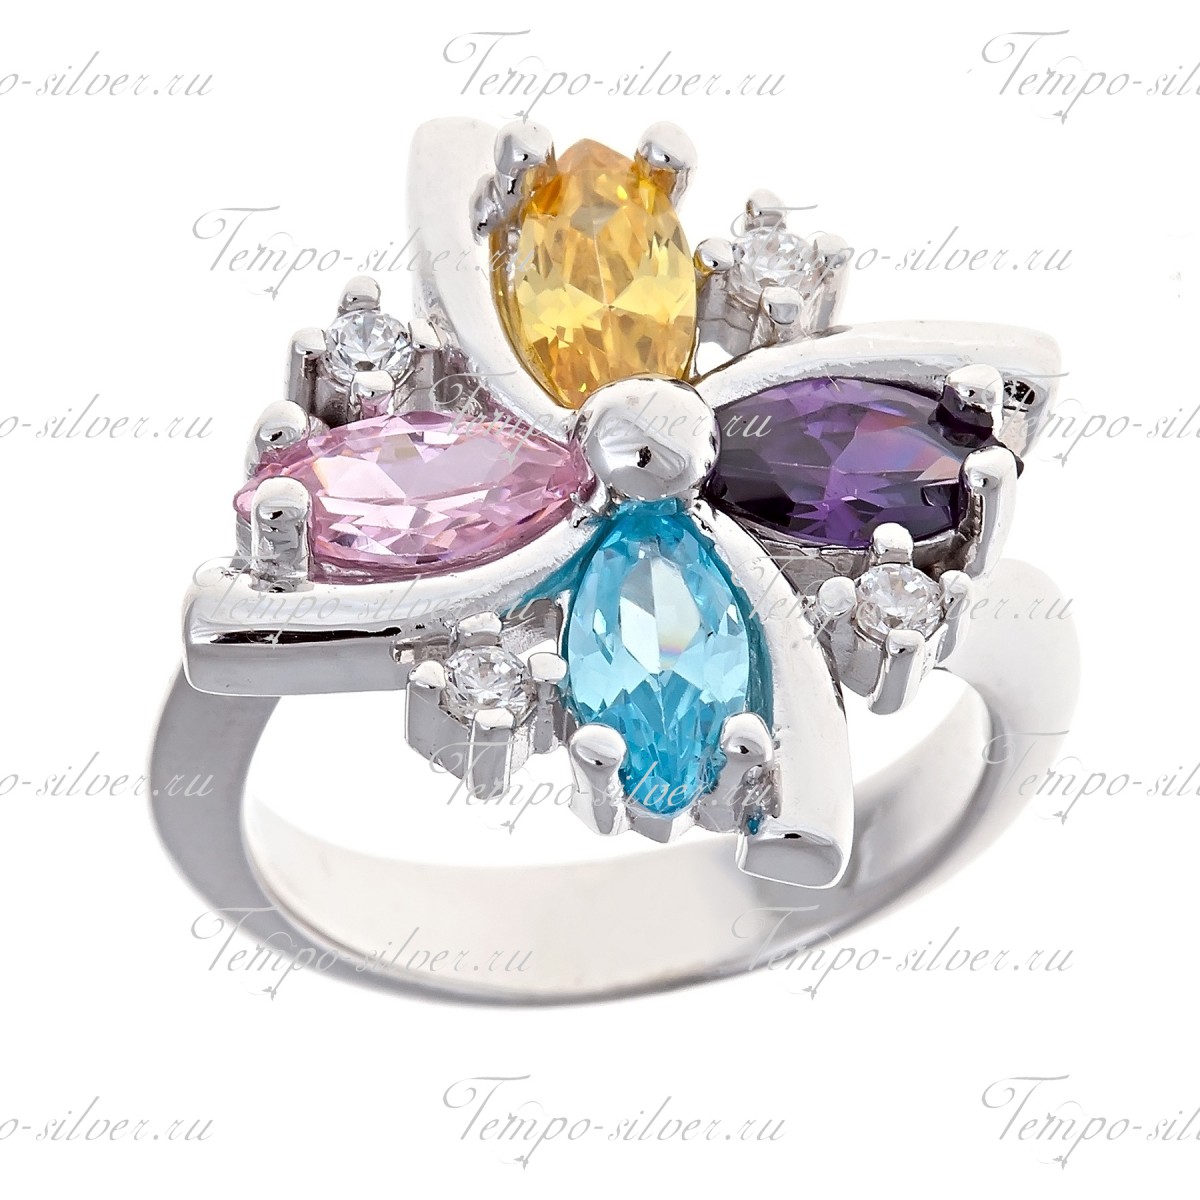 Кольцо серебряное клевер с разноцветными камнями